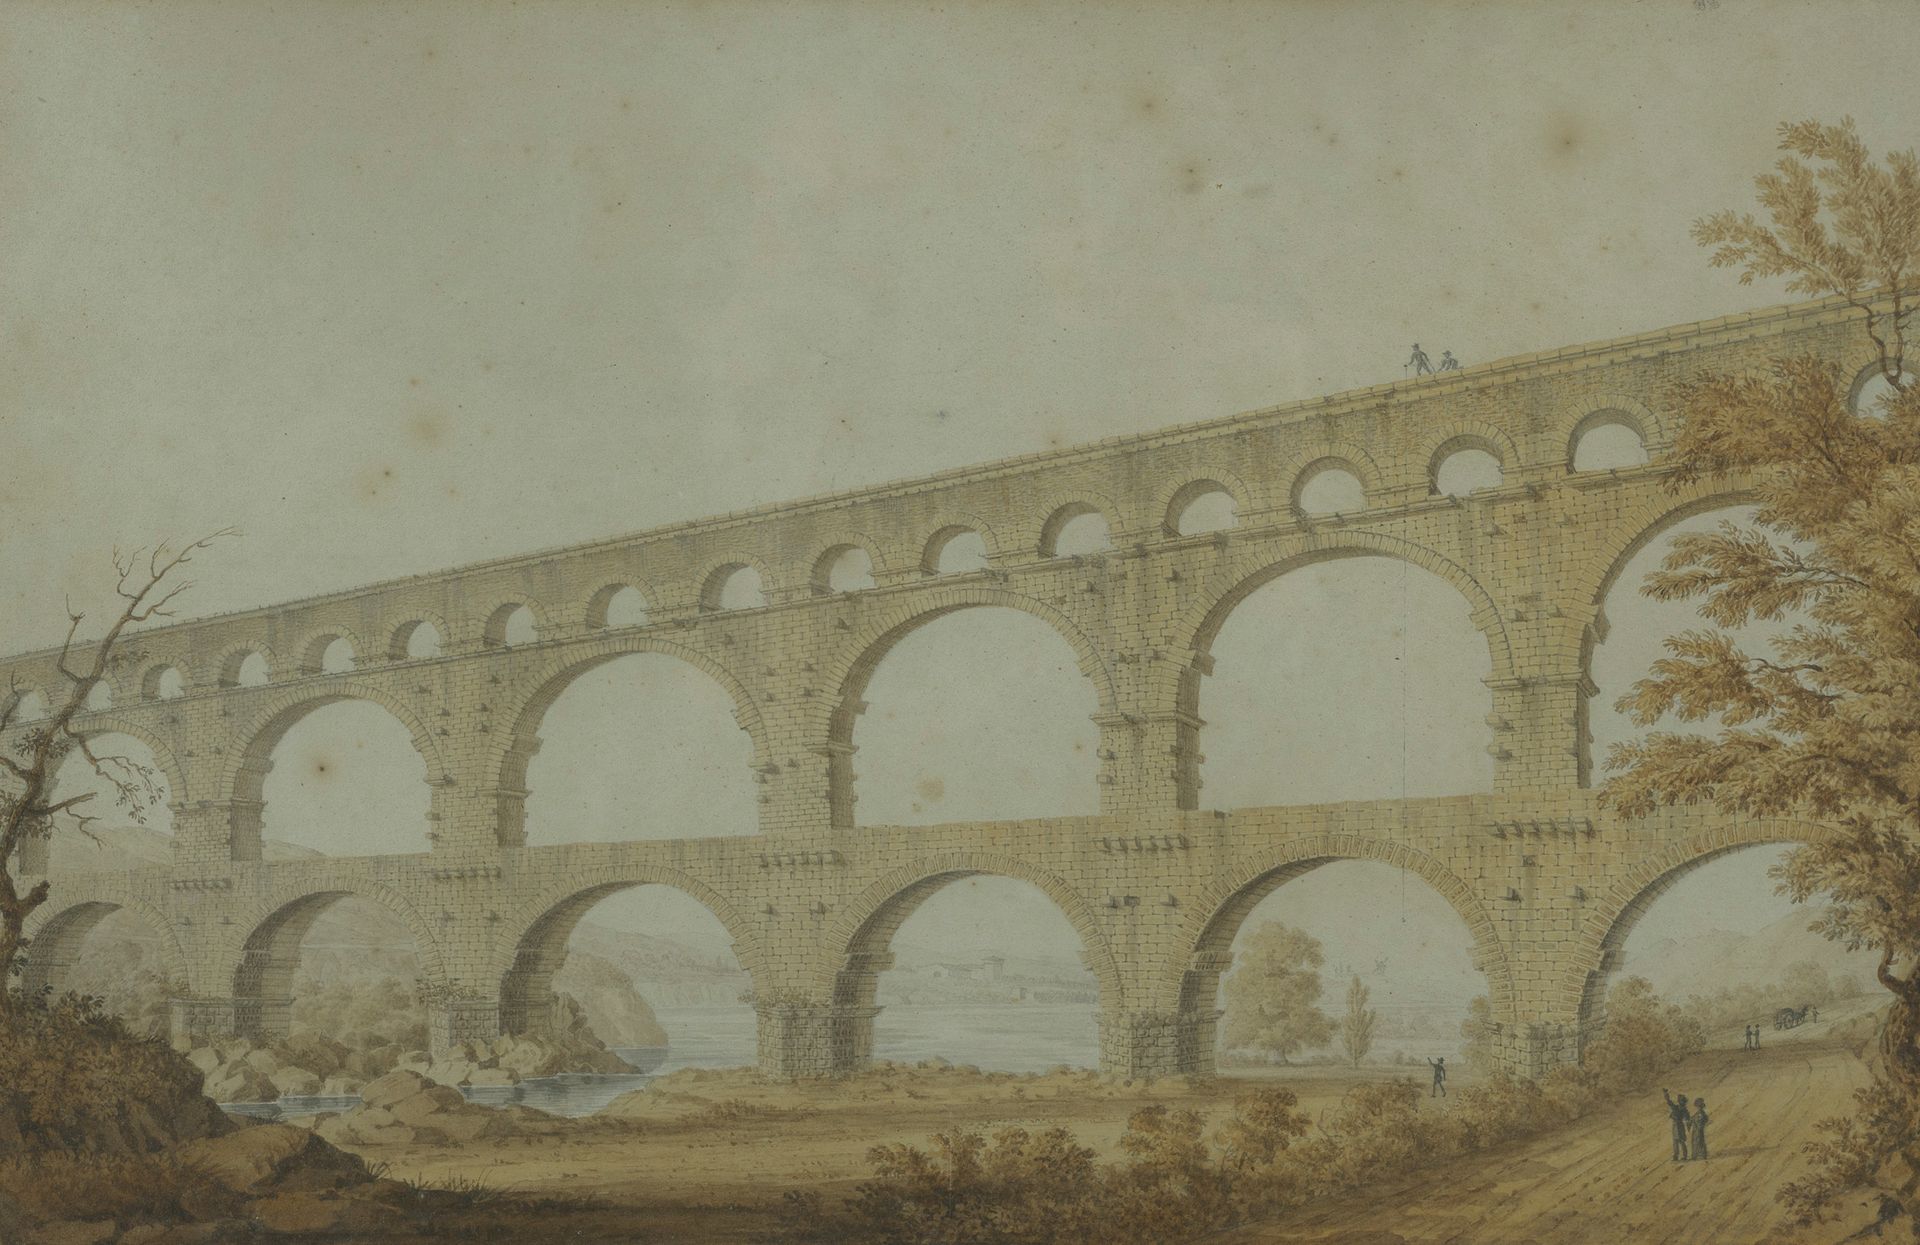 Null Ecole vers 1820

Le Pont du Gard

Panorama de Nimes

Paire d’aquarelles